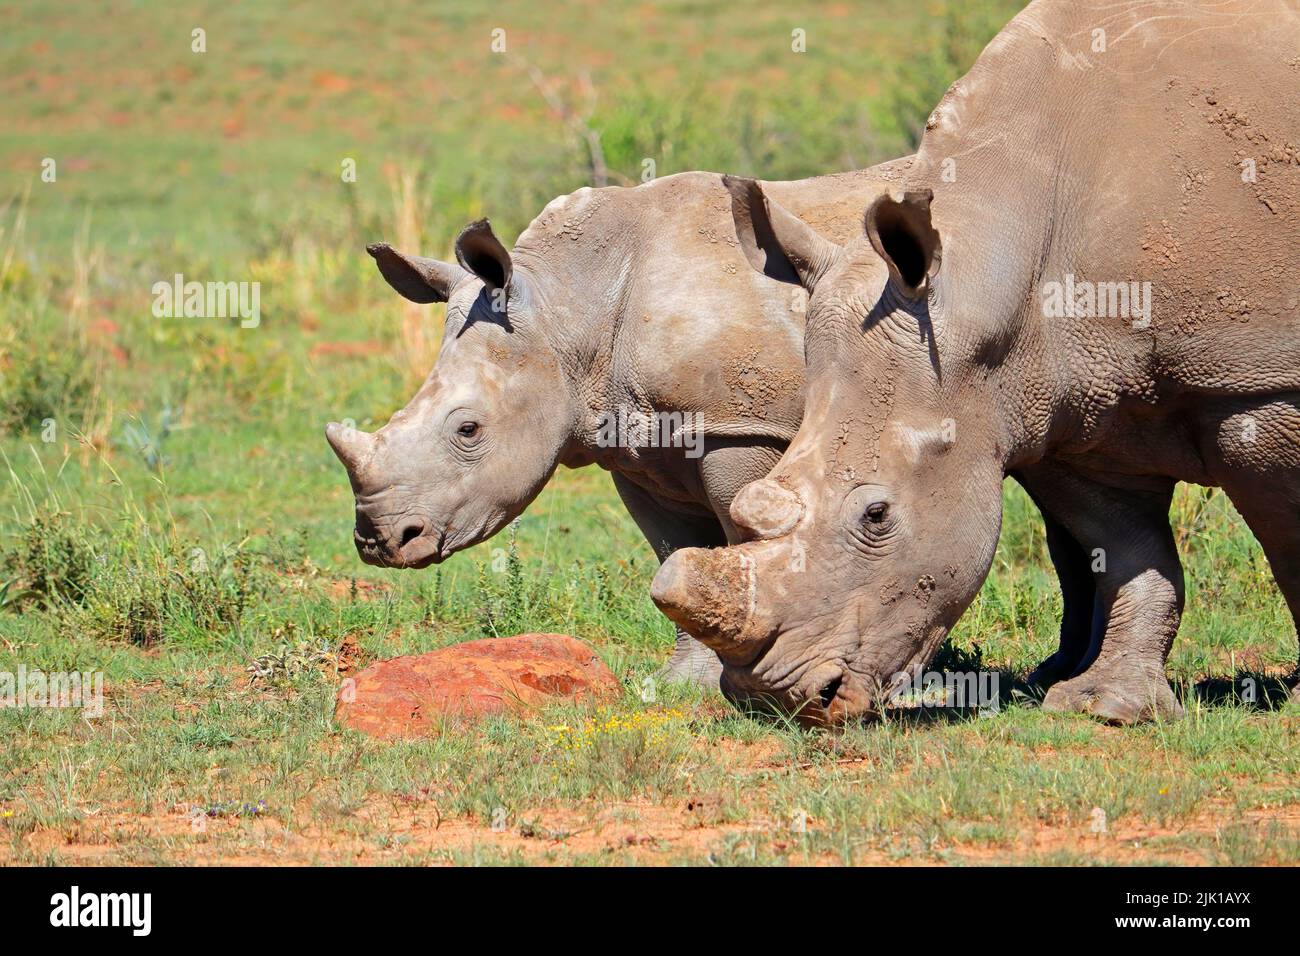 Portrait d'un rhinocéros blanc (Ceratotherium simum) avec veau, Afrique du Sud Banque D'Images